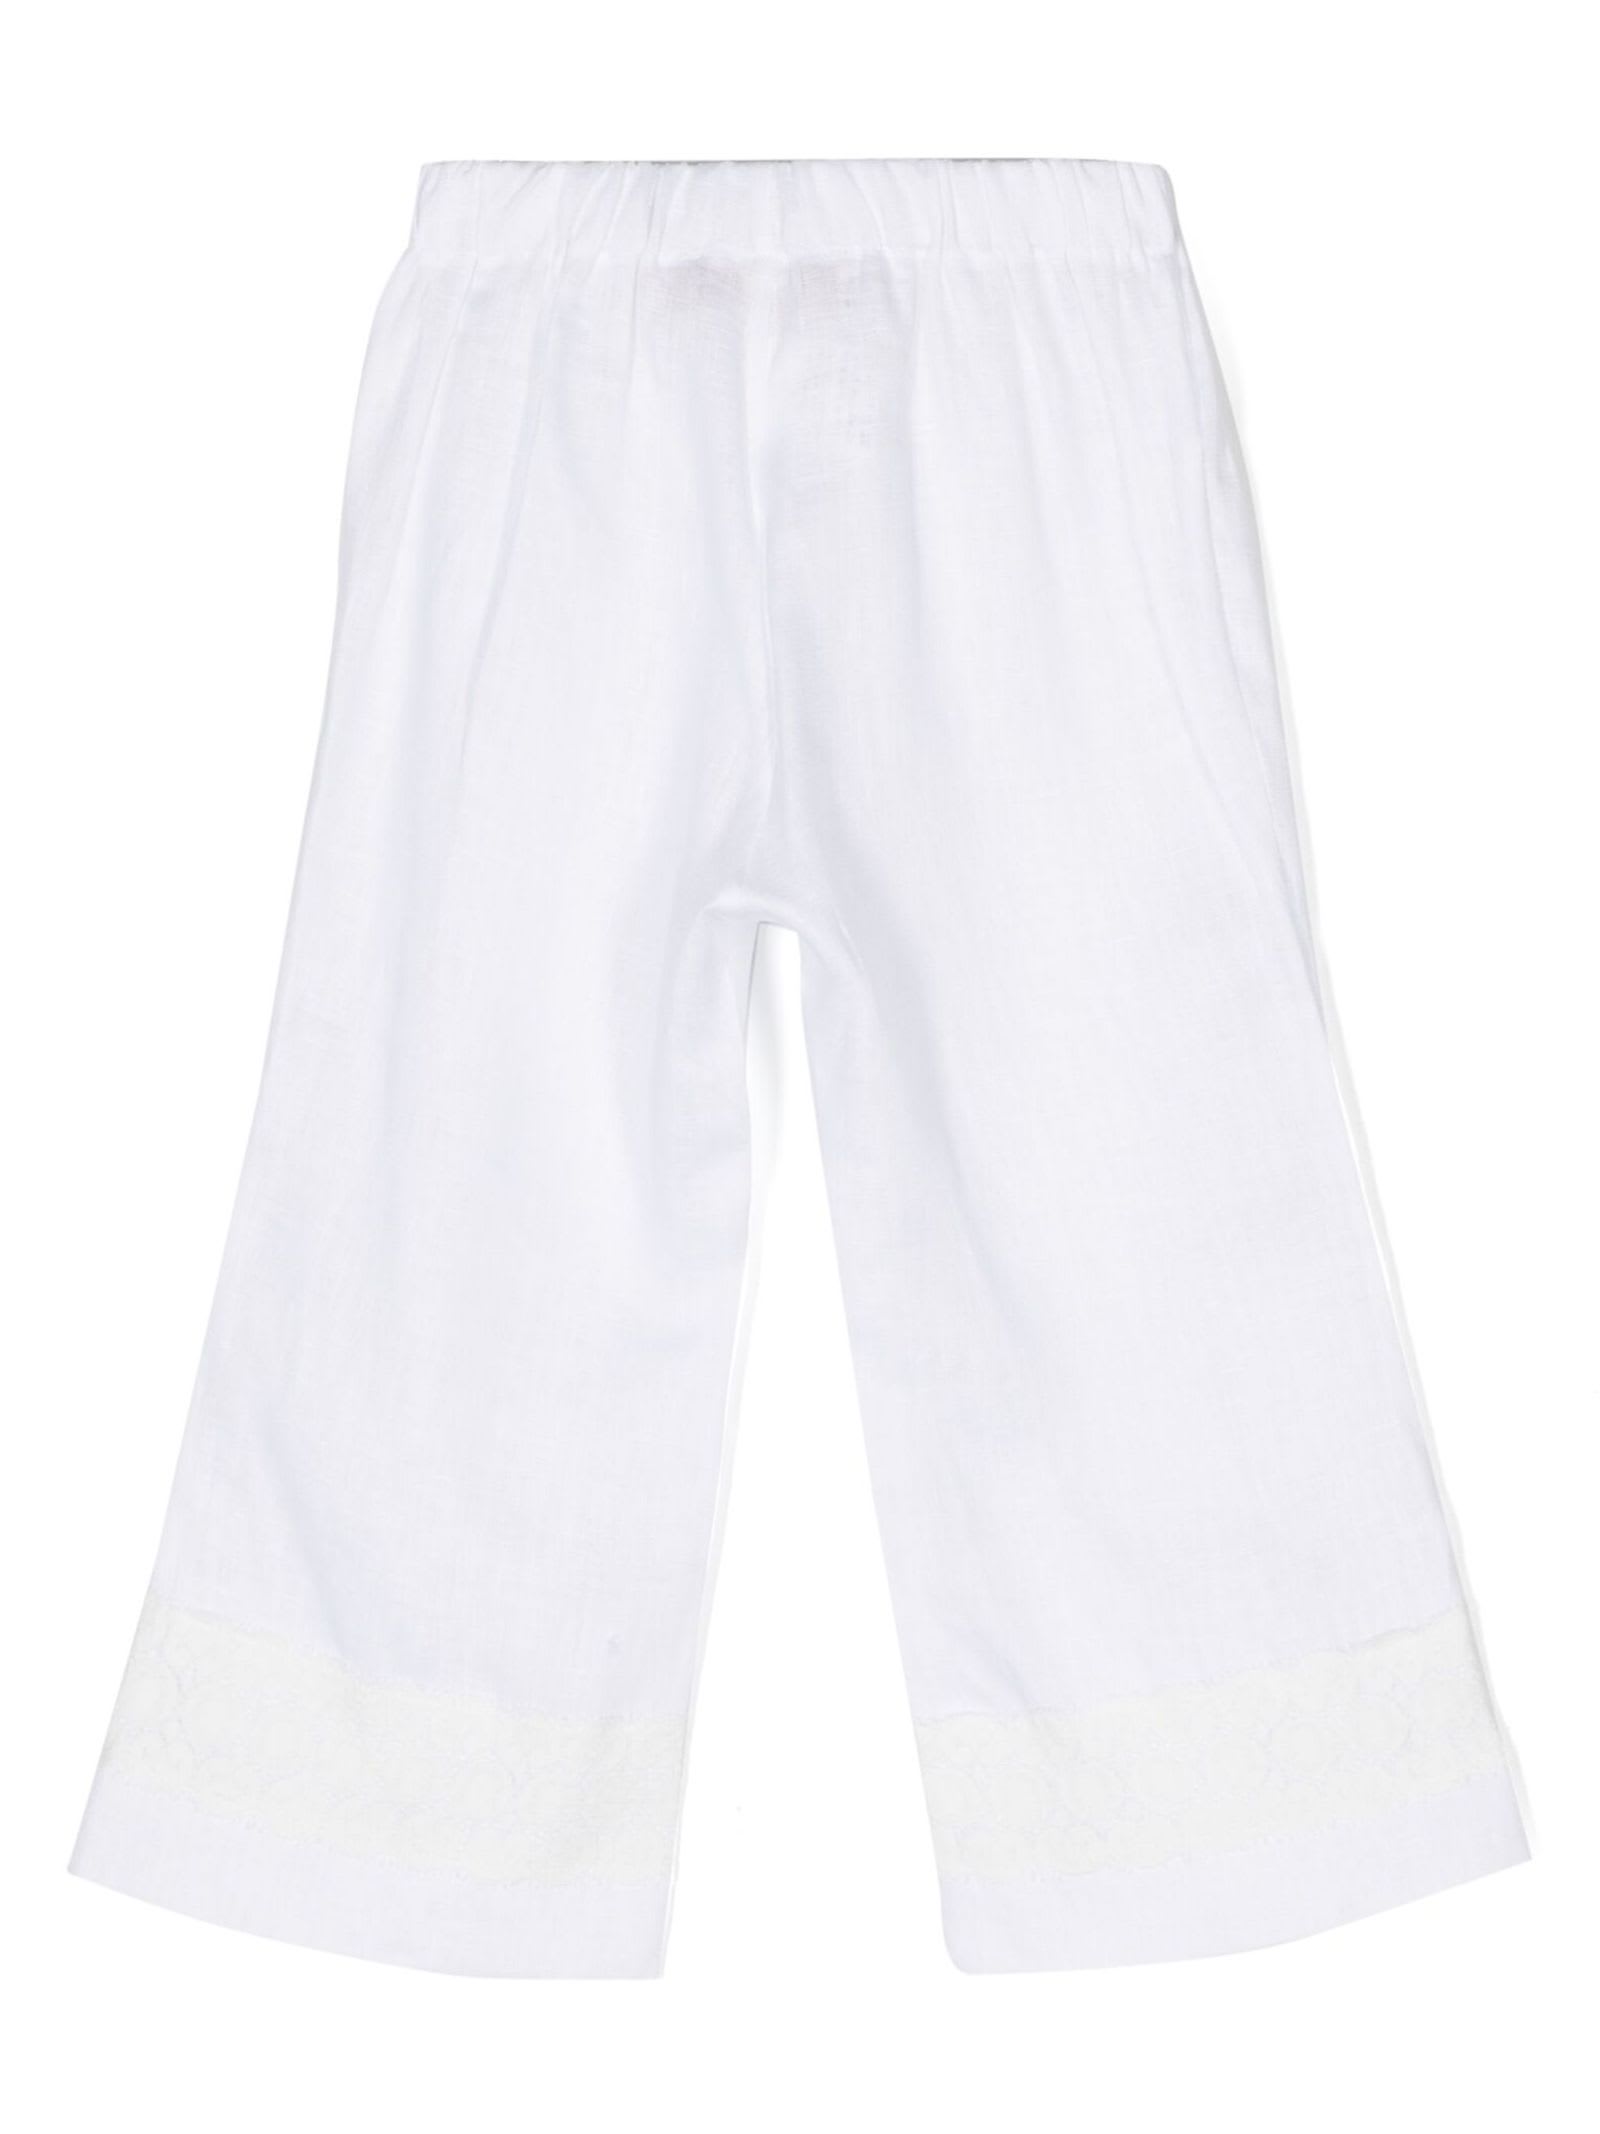 Shop La Stupenderia Trousers White